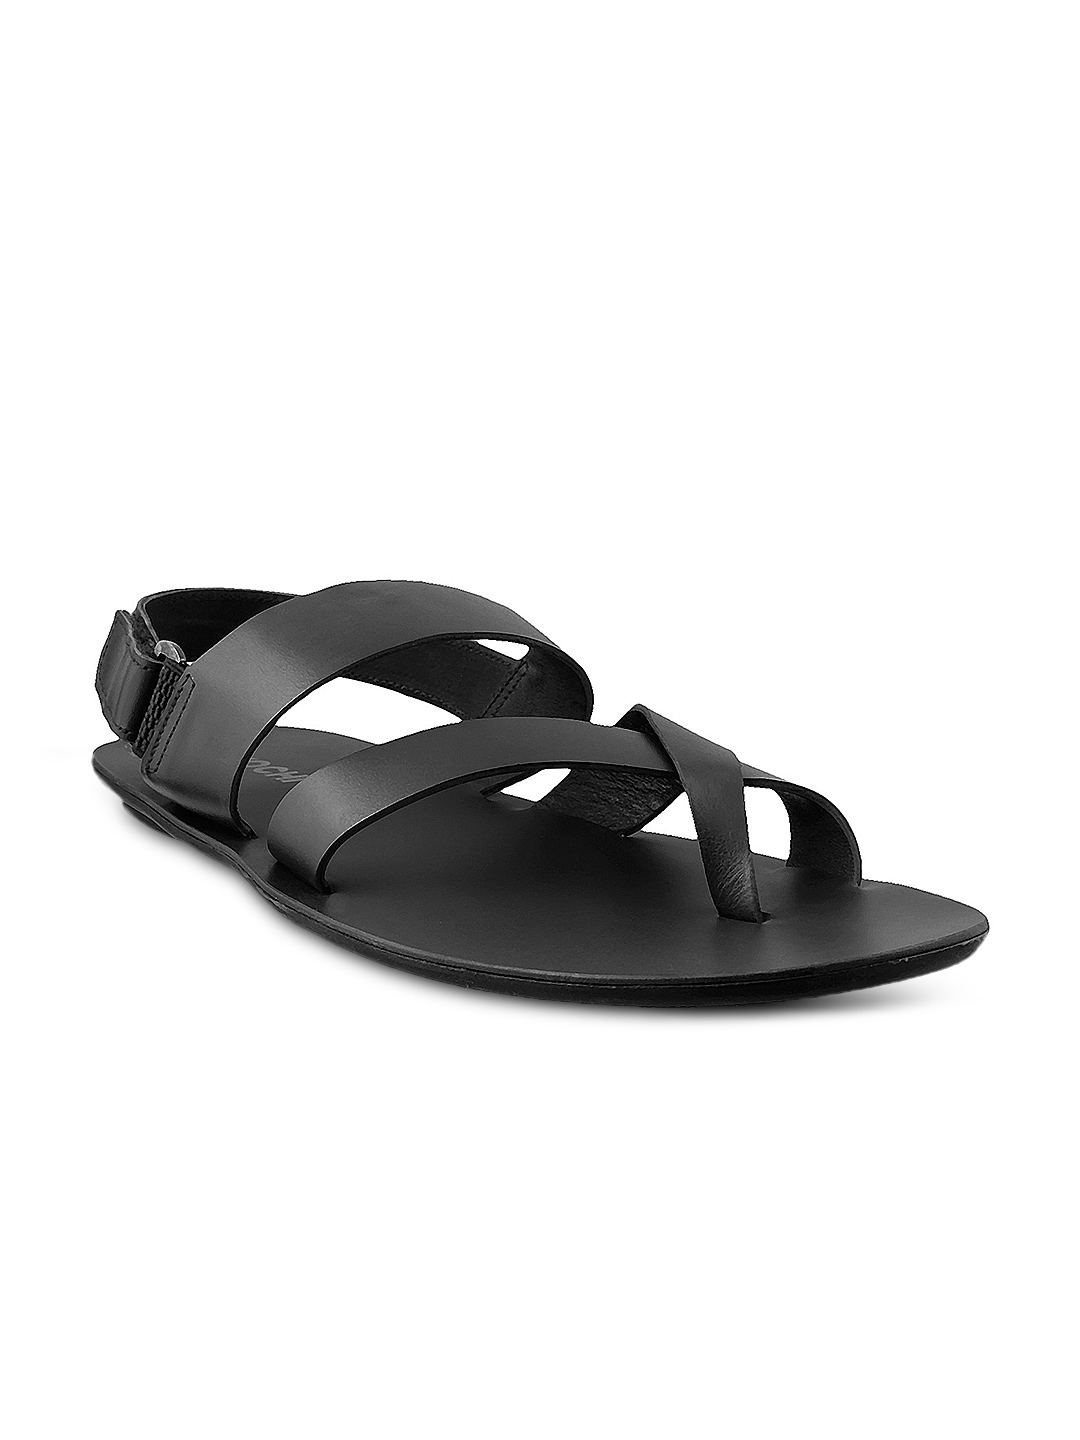 mochi black sandals